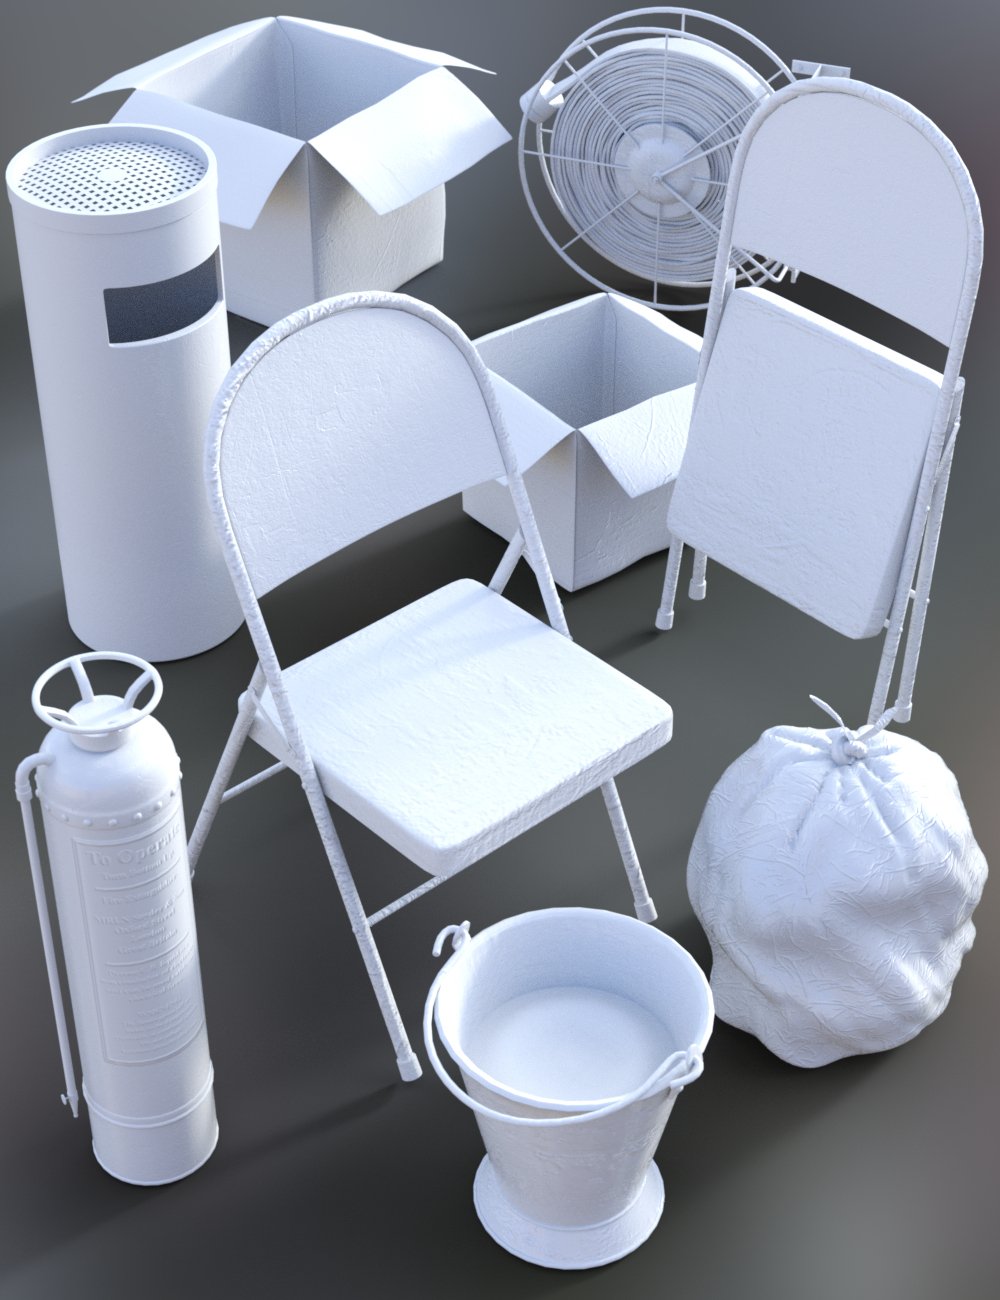 Corridor Clutter by: Merlin Studios, 3D Models by Daz 3D